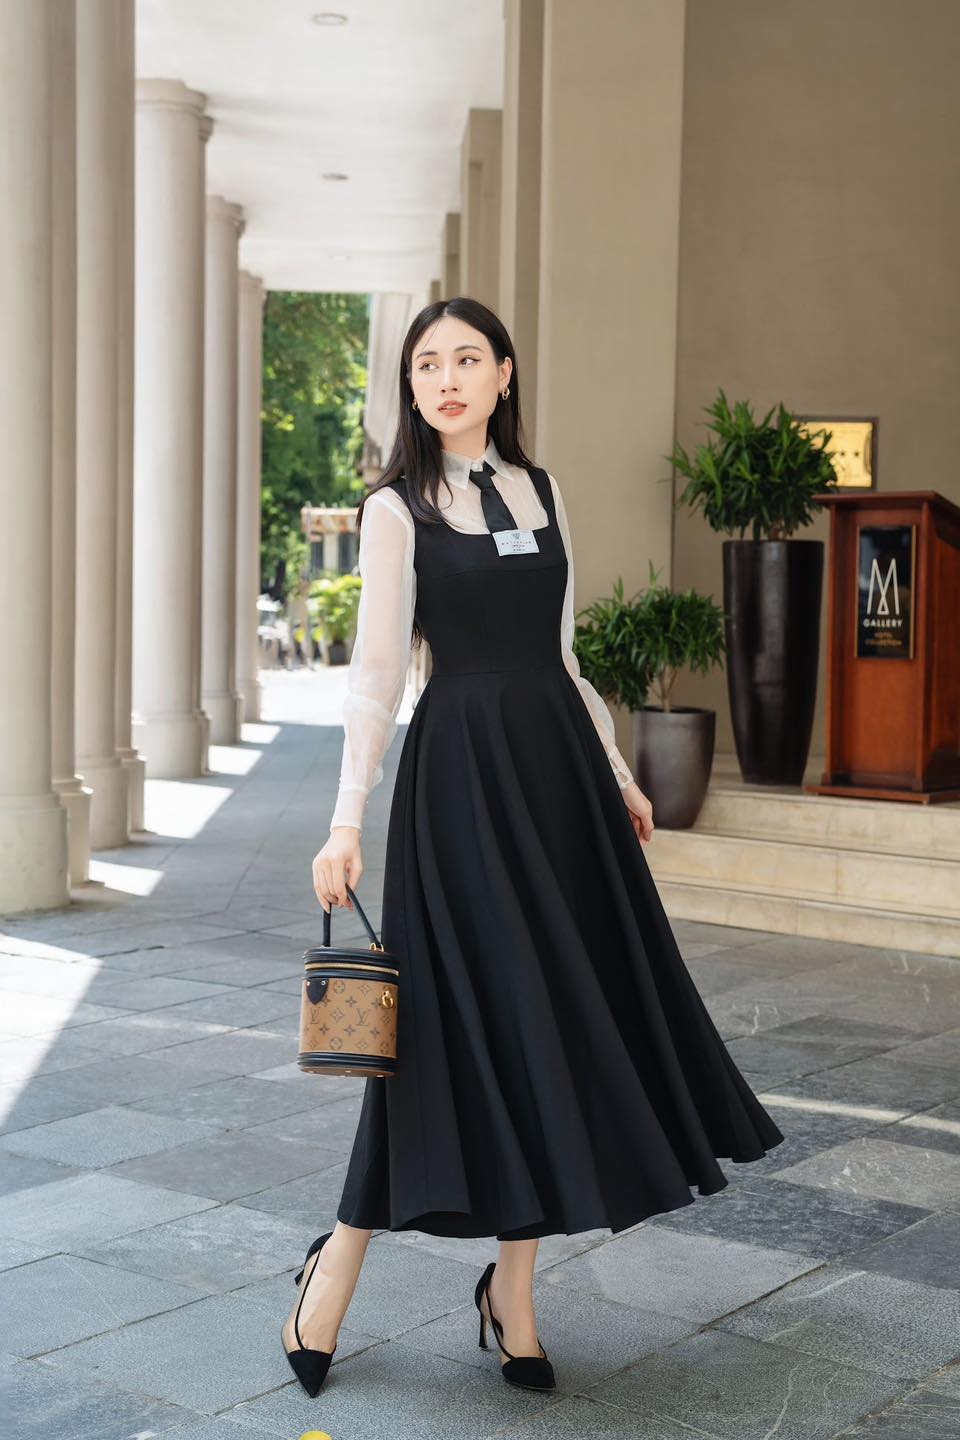 Váy Sơ Mi Nơ Cổ Dáng Xoè Màu Trắng và Đen, Đầm Bánh Bèo Tay Phồng Chan  House. | Shopee Việt Nam